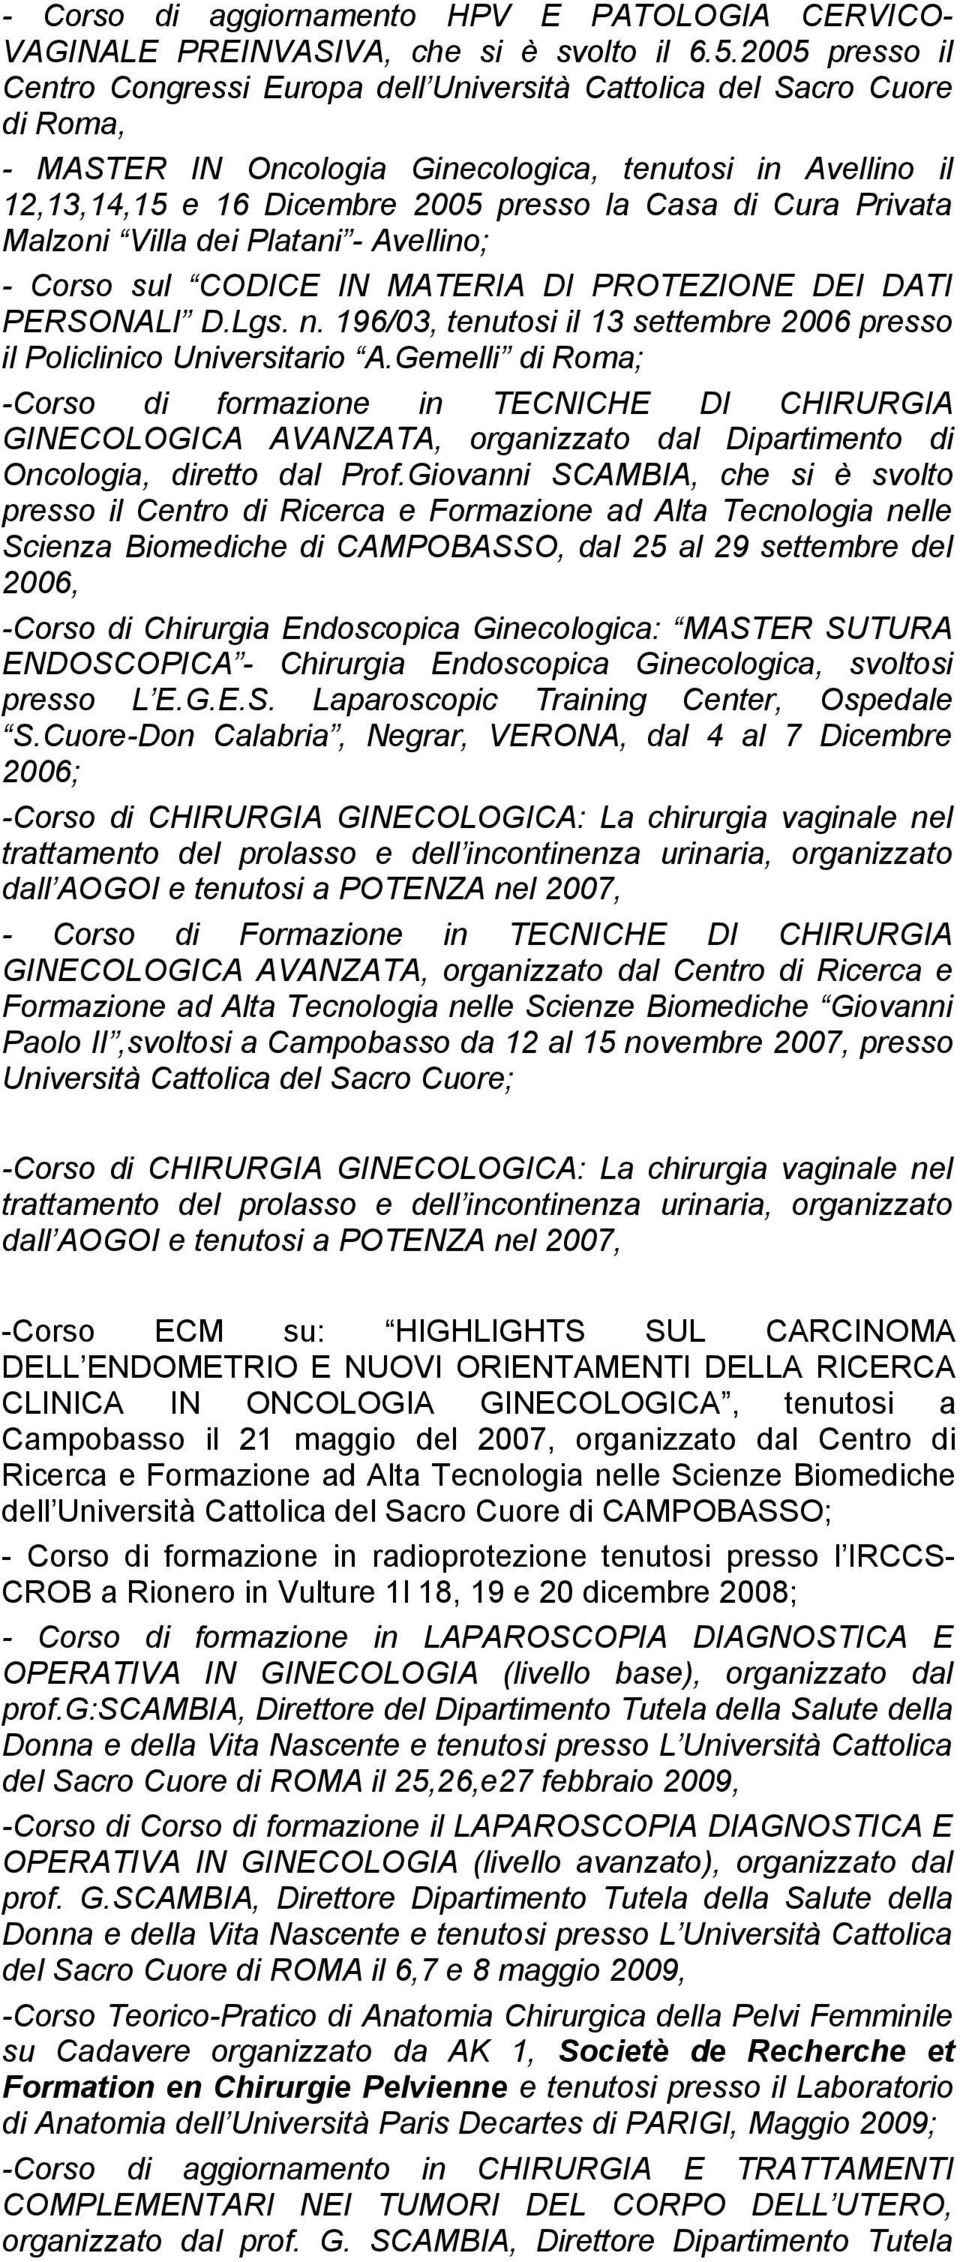 Cura Privata Malzoni Villa dei Platani - Avellino; - Corso sul CODICE IN MATERIA DI PROTEZIONE DEI DATI PERSONALI D.Lgs. n. 196/03, tenutosi il 13 settembre 2006 presso il Policlinico Universitario A.